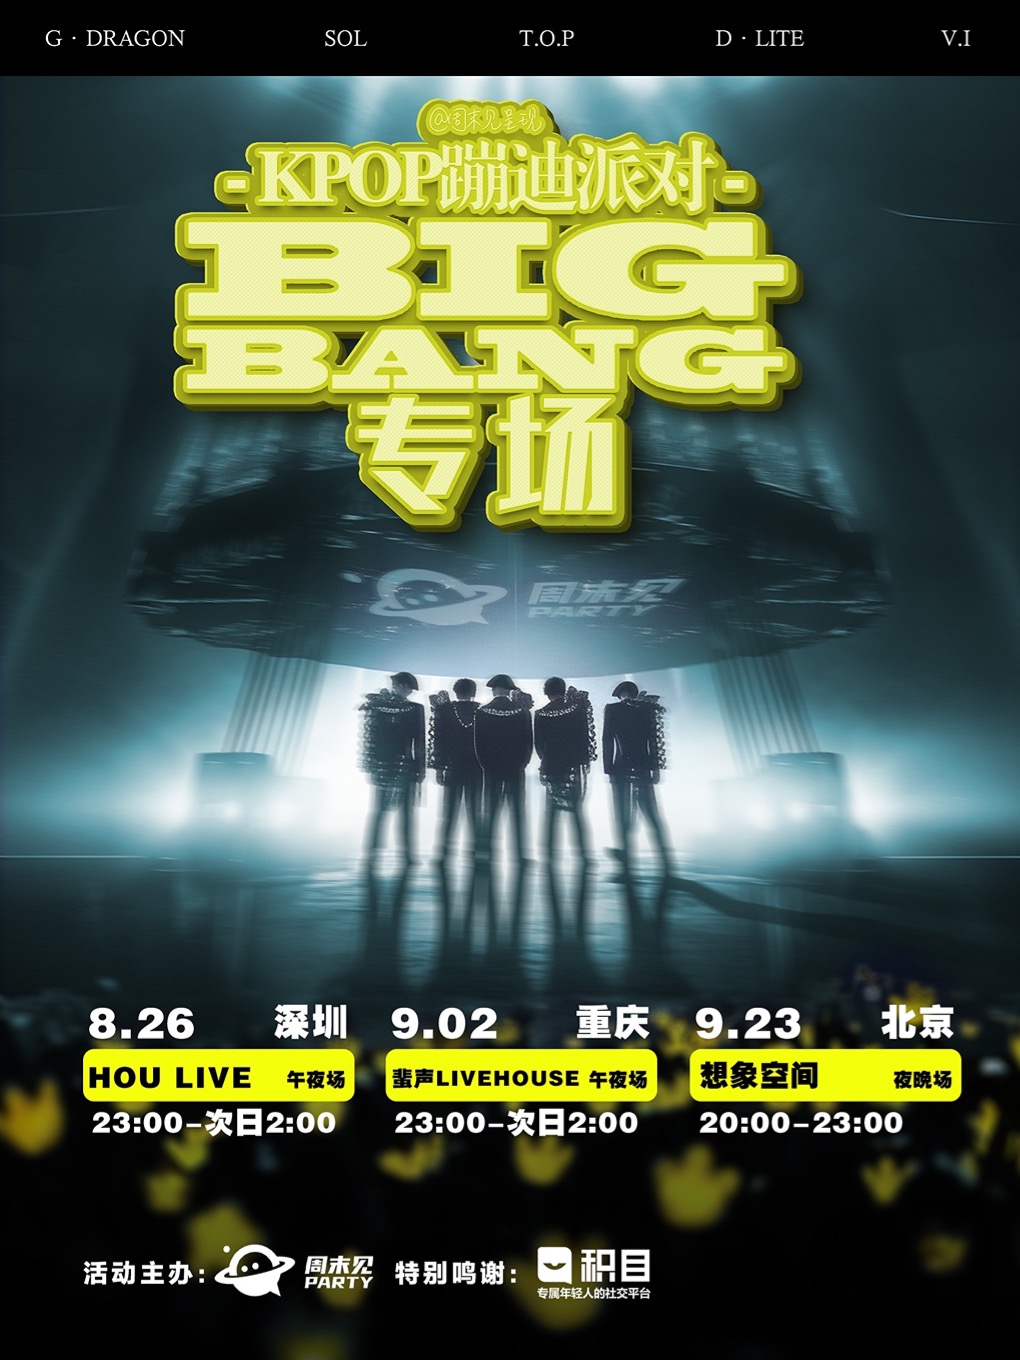 深圳「BIGBANG专场」粉丝蹦迪派对 @周末见呈现 「KPOP PARTY系列」